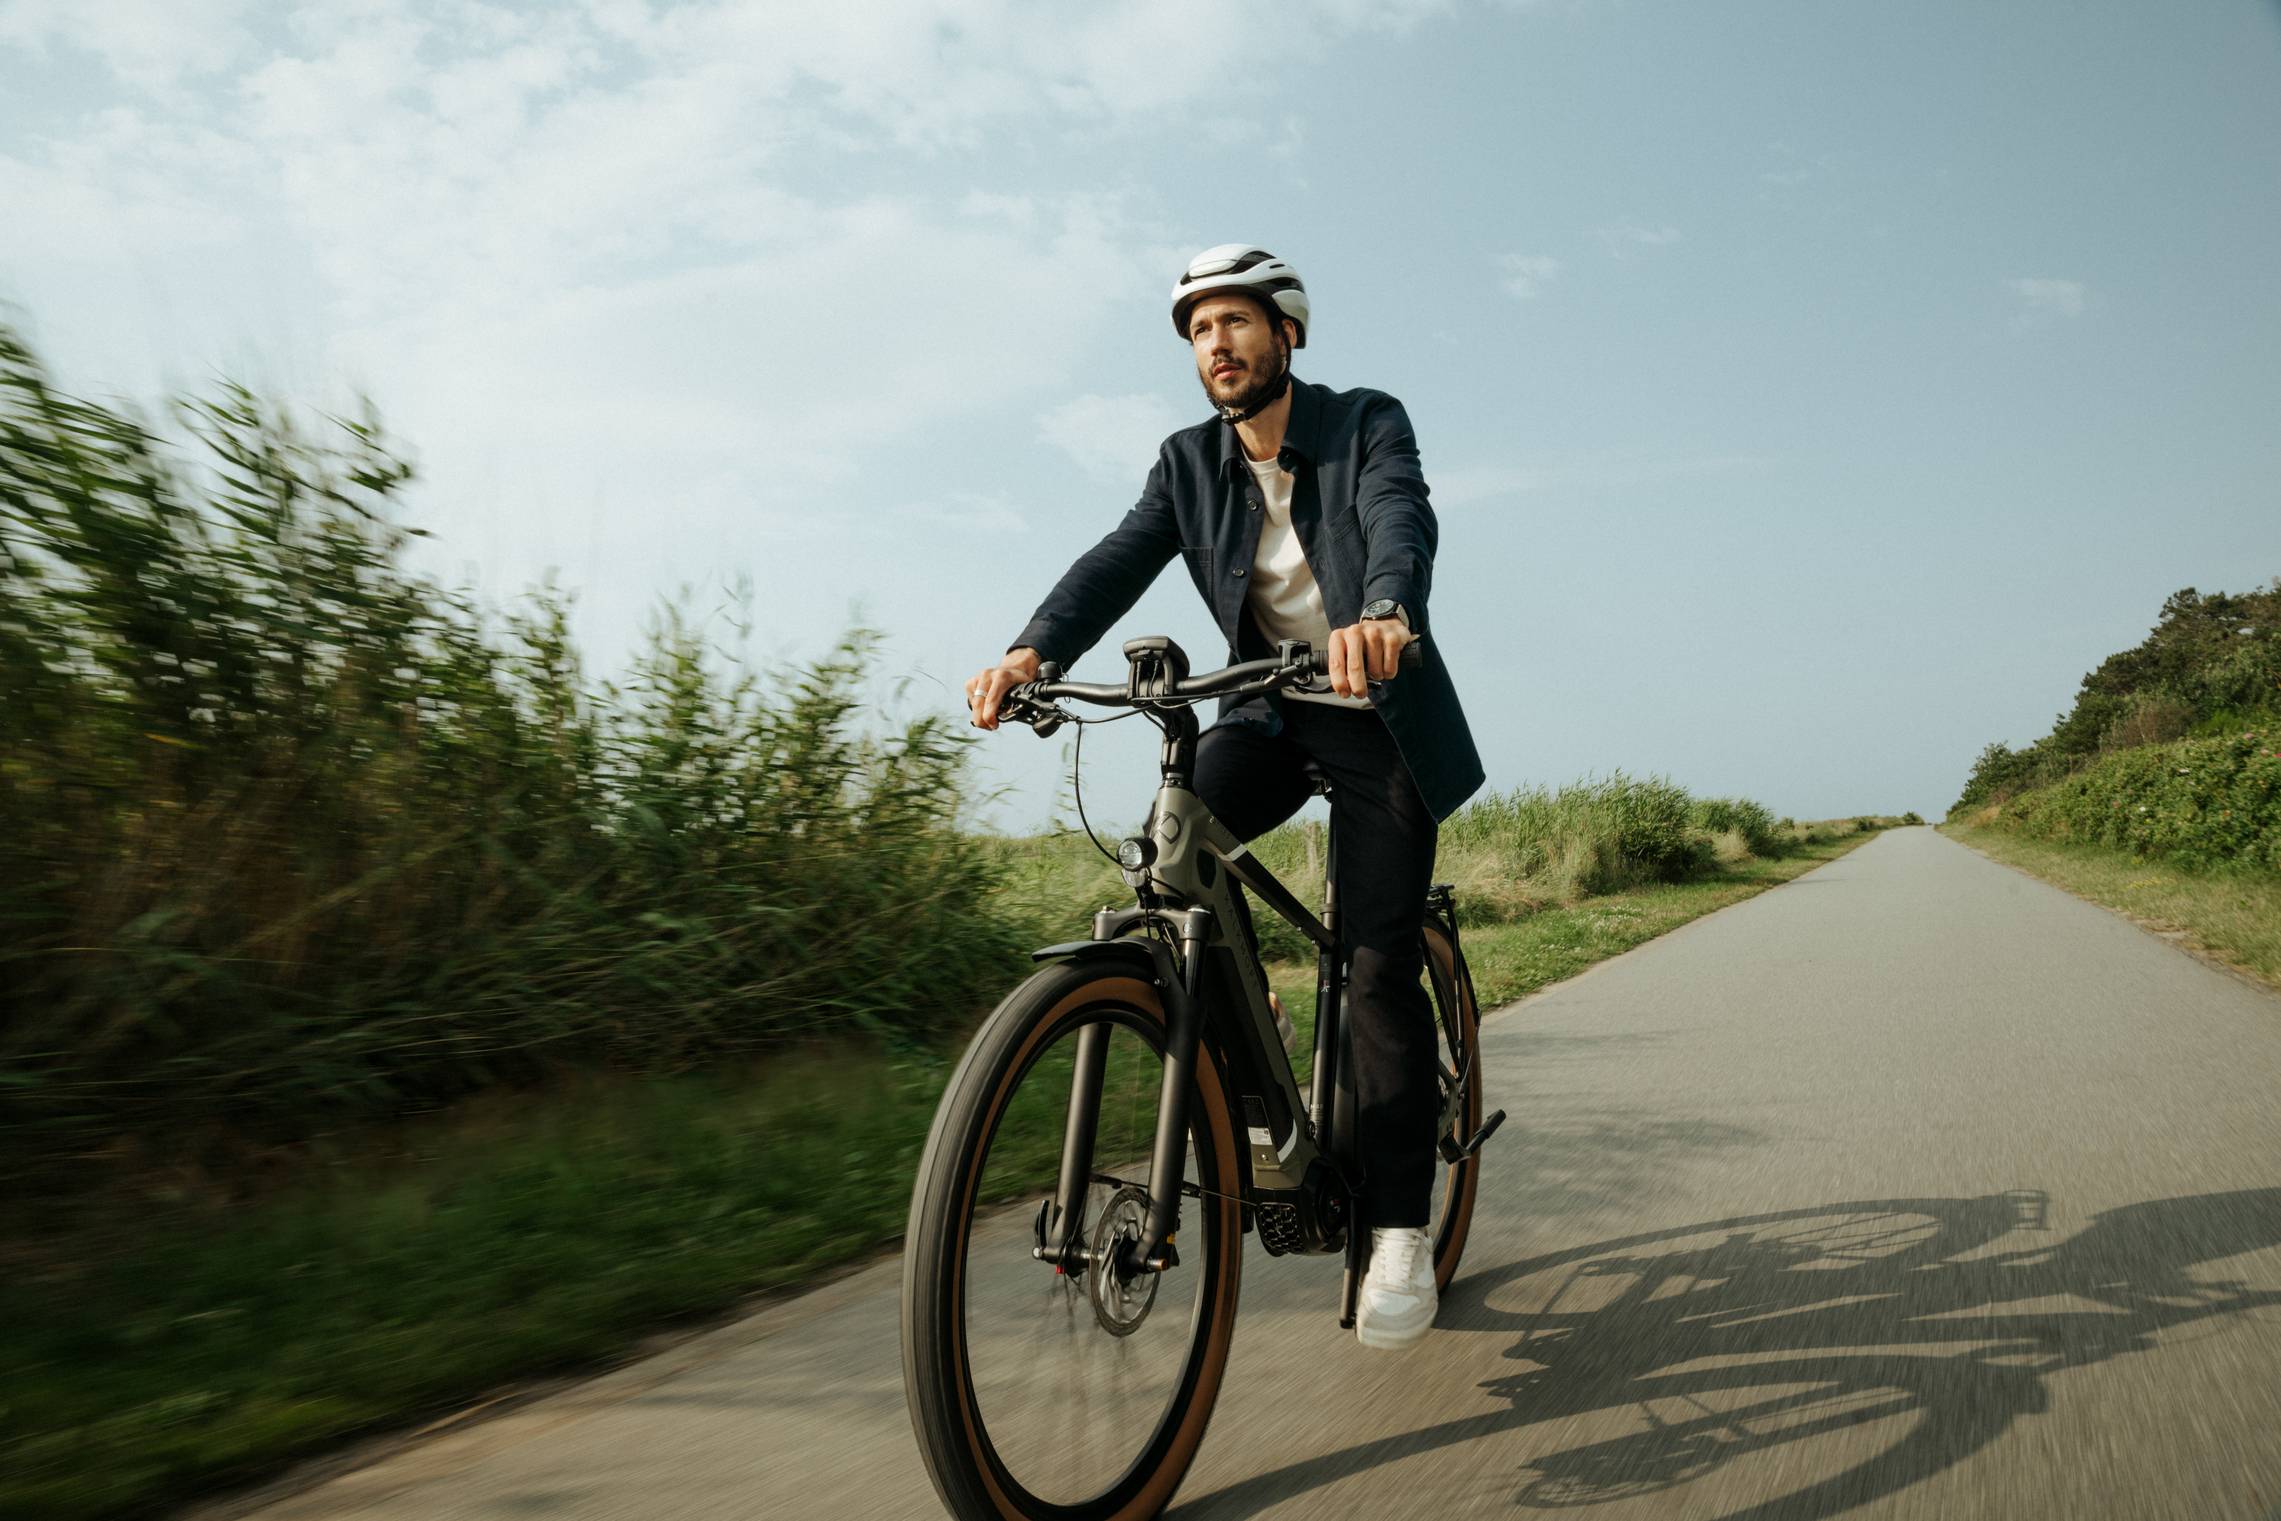 Mann mit Helm fährt auf Dienstrad auf Radweg in ländlicher Umgebung